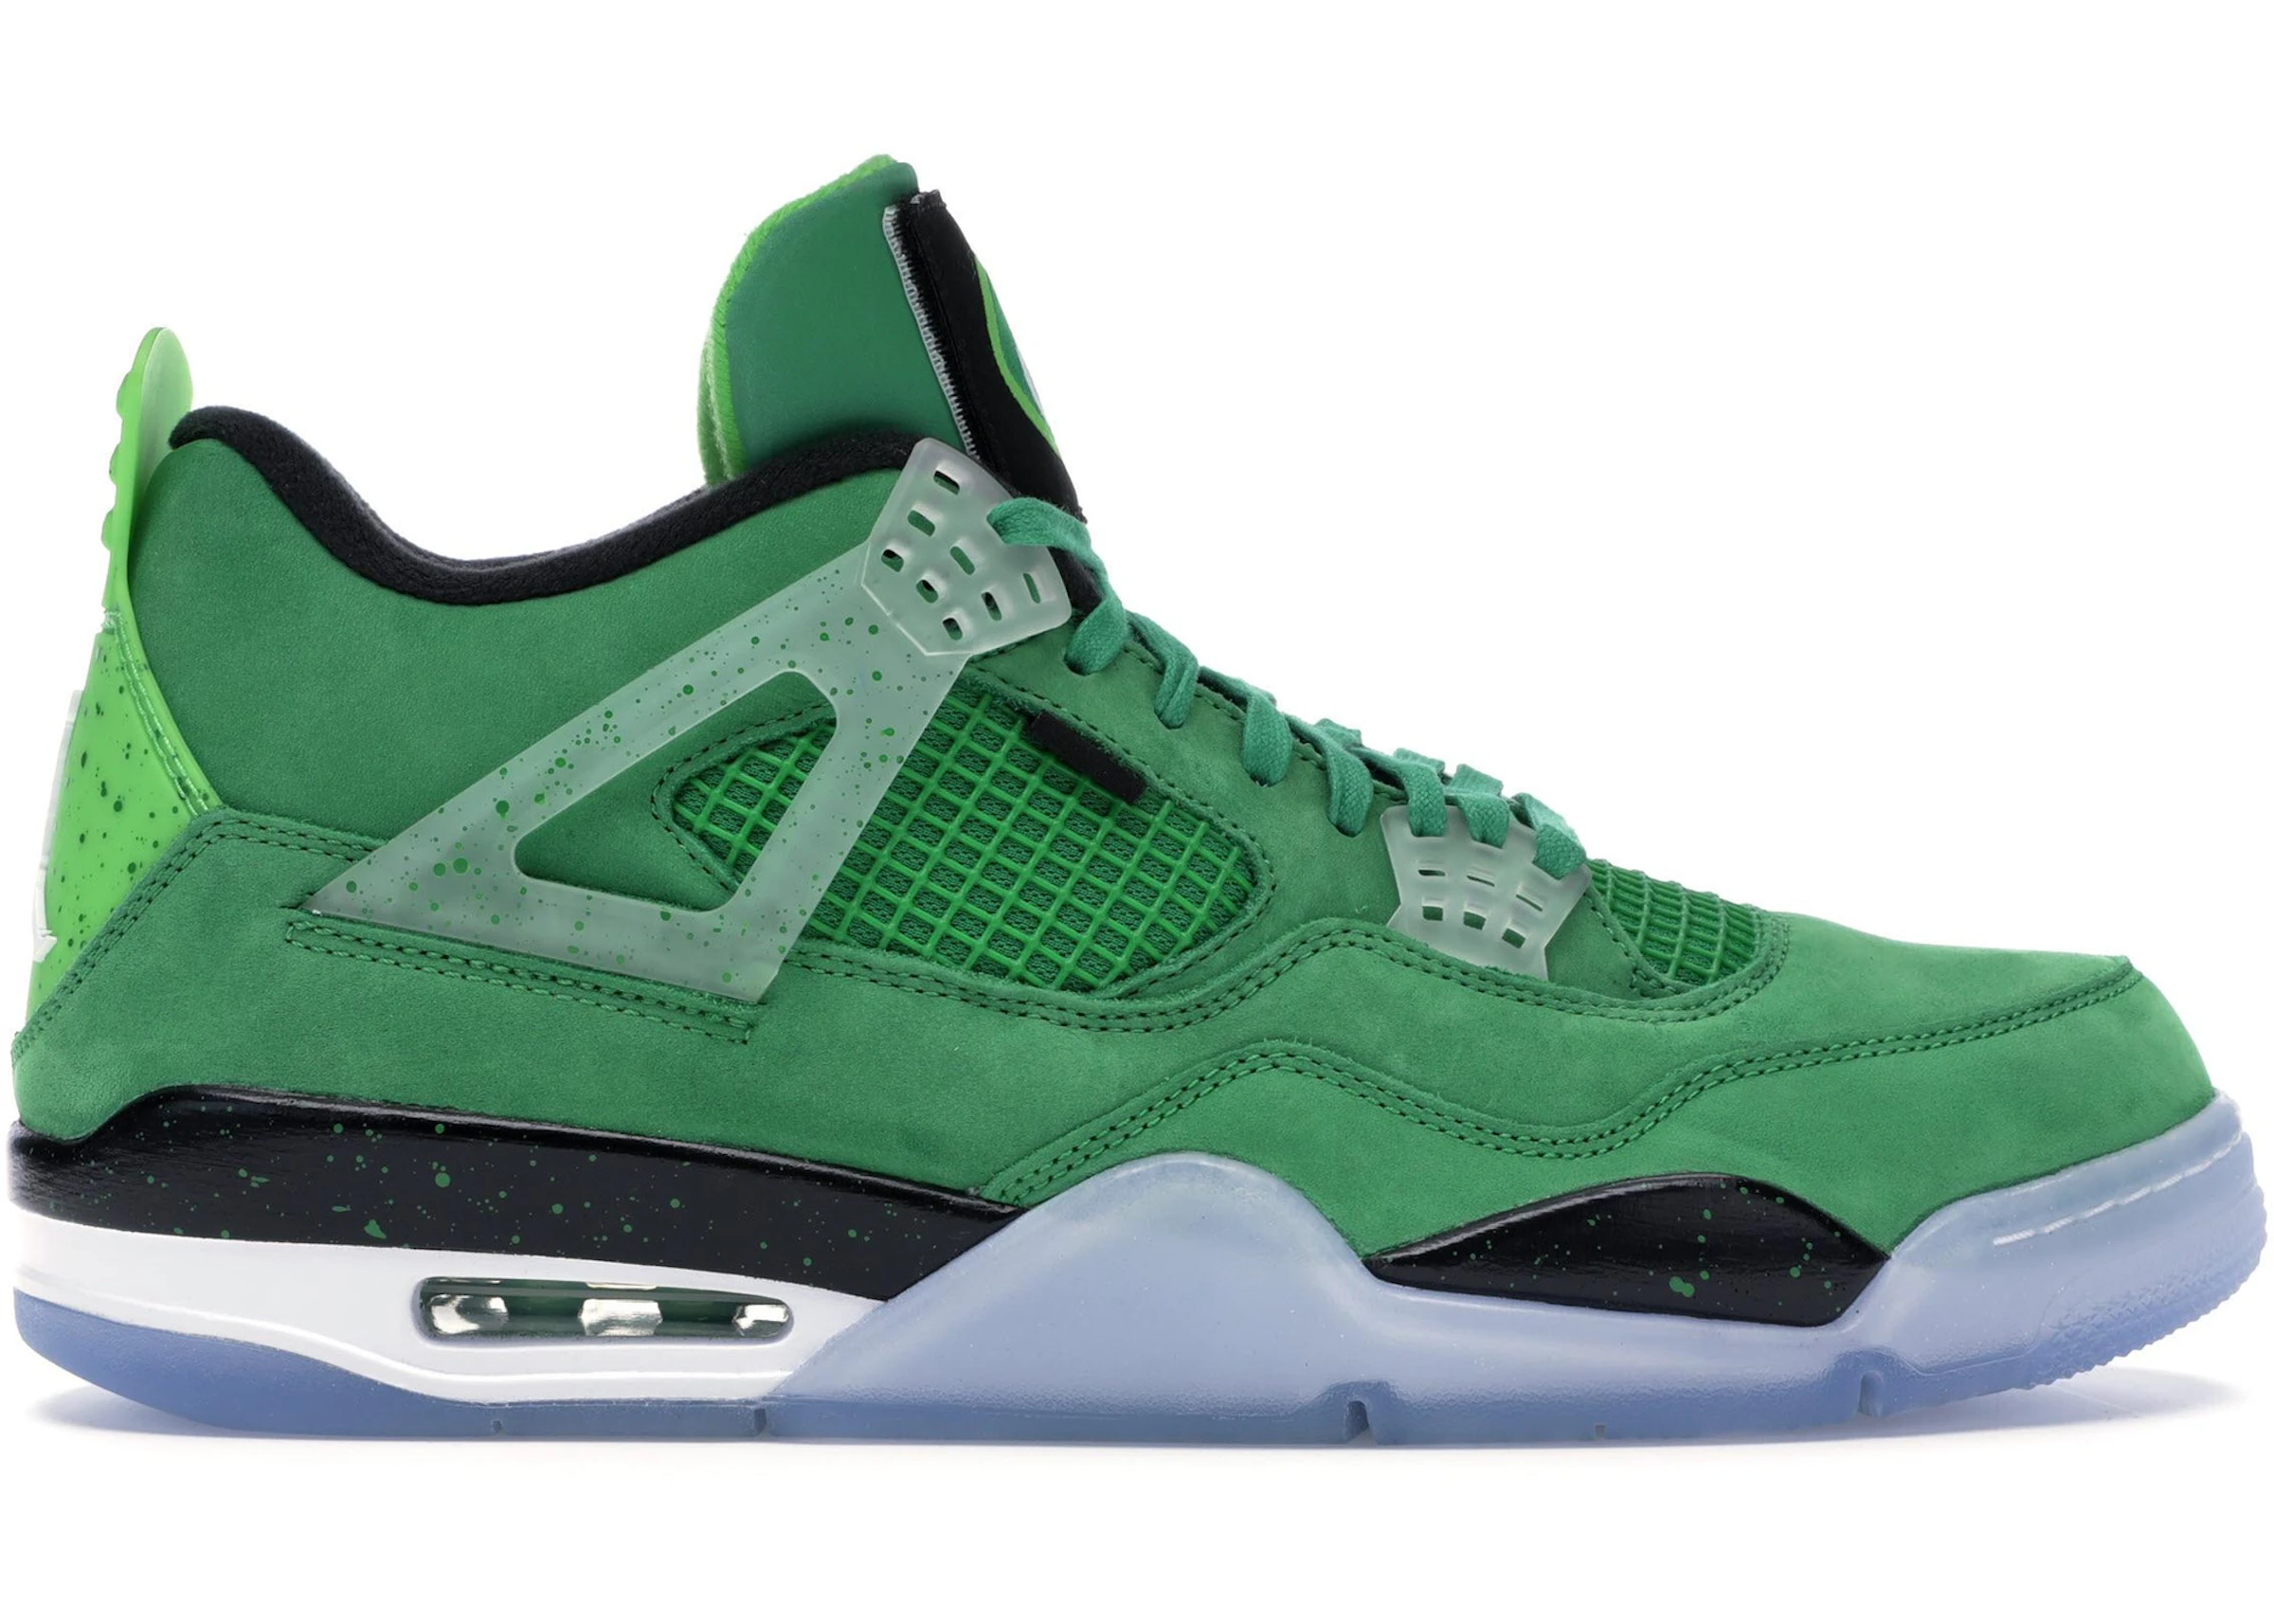 Buy Air jordan 5 green Jordan 4 Shoes & New Sneakers - StockX